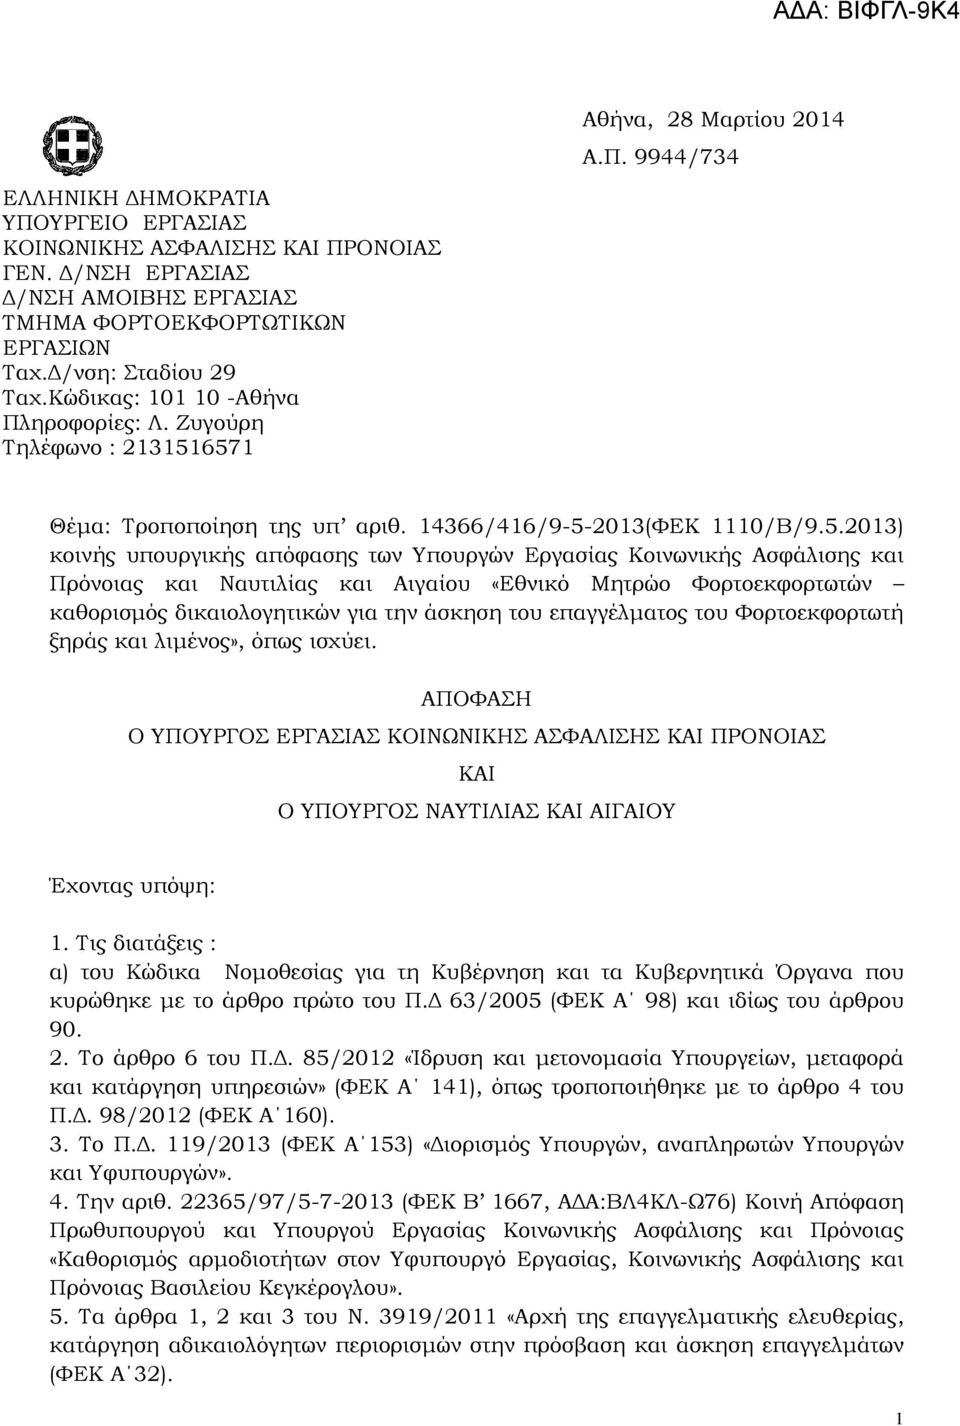 6571 Θέμα: Τροποποίηση της υπ αριθ. 14366/416/9-5-2013(ΦΕΚ 1110/Β/9.5.2013) κοινής υπουργικής απόφασης των Υπουργών Εργασίας Κοινωνικής Ασφάλισης και Πρόνοιας και Ναυτιλίας και Αιγαίου «Εθνικό Μητρώο